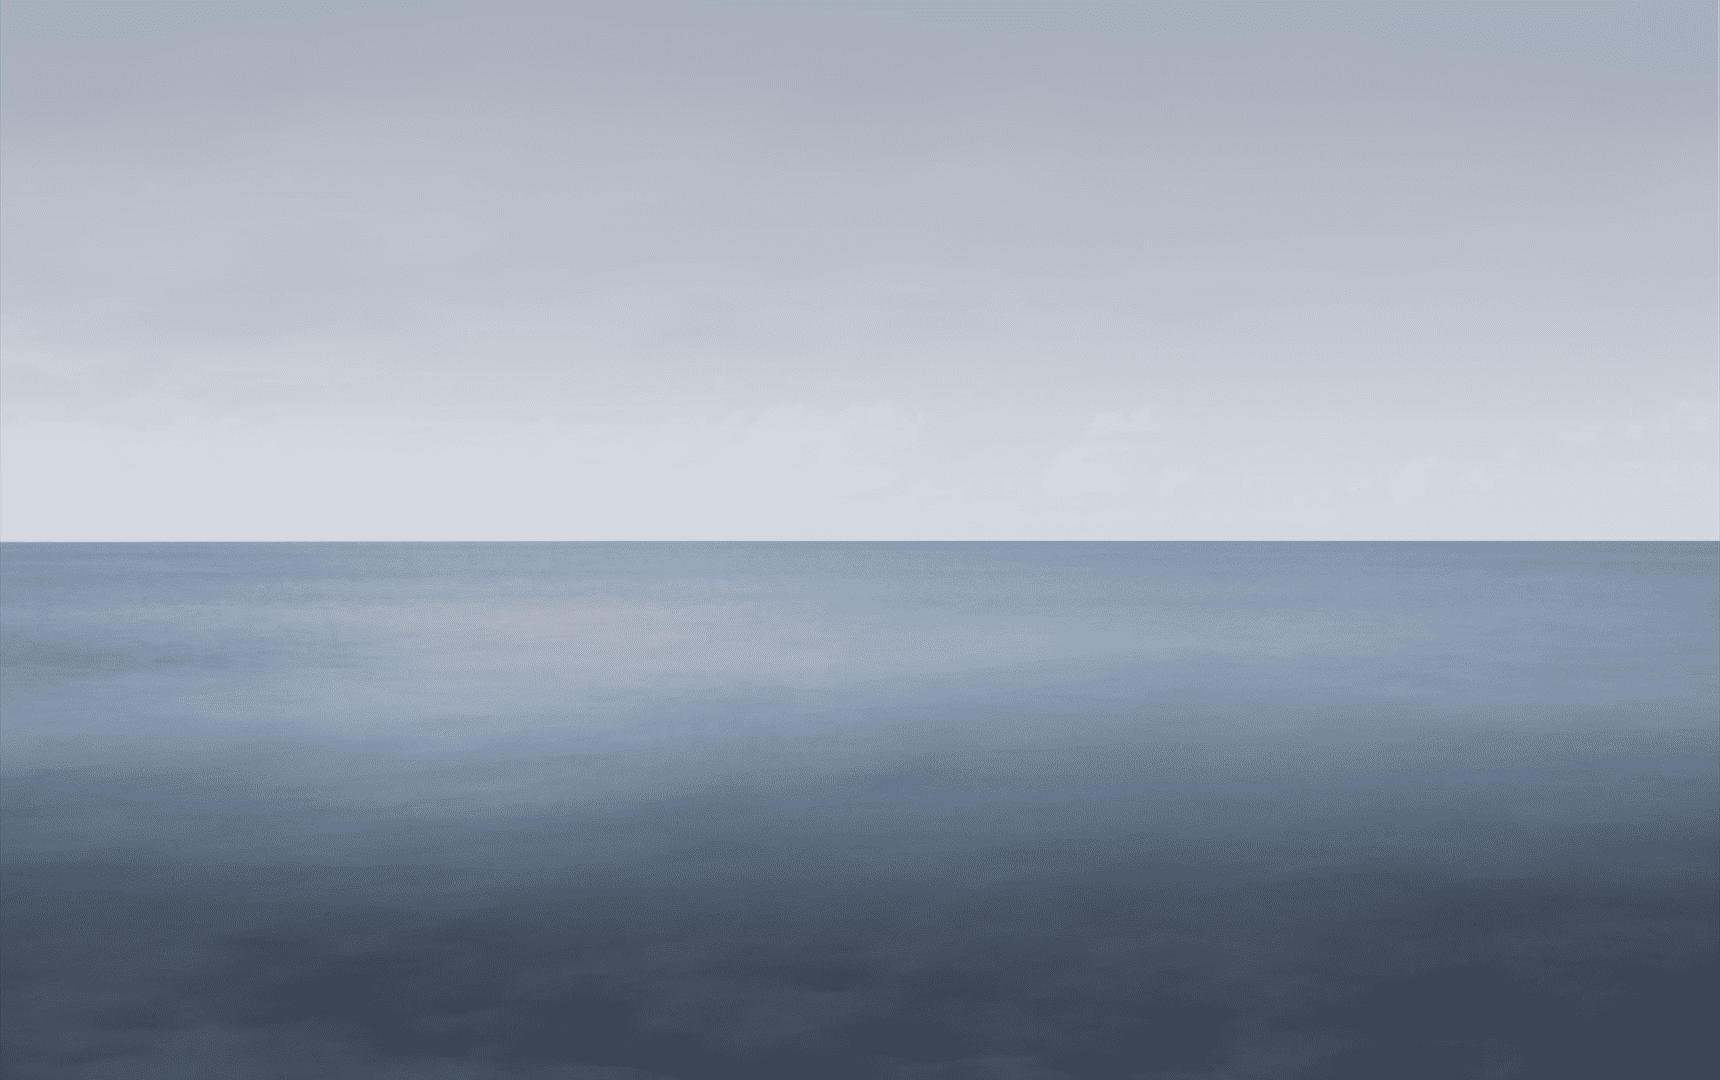 Dead sea scape image